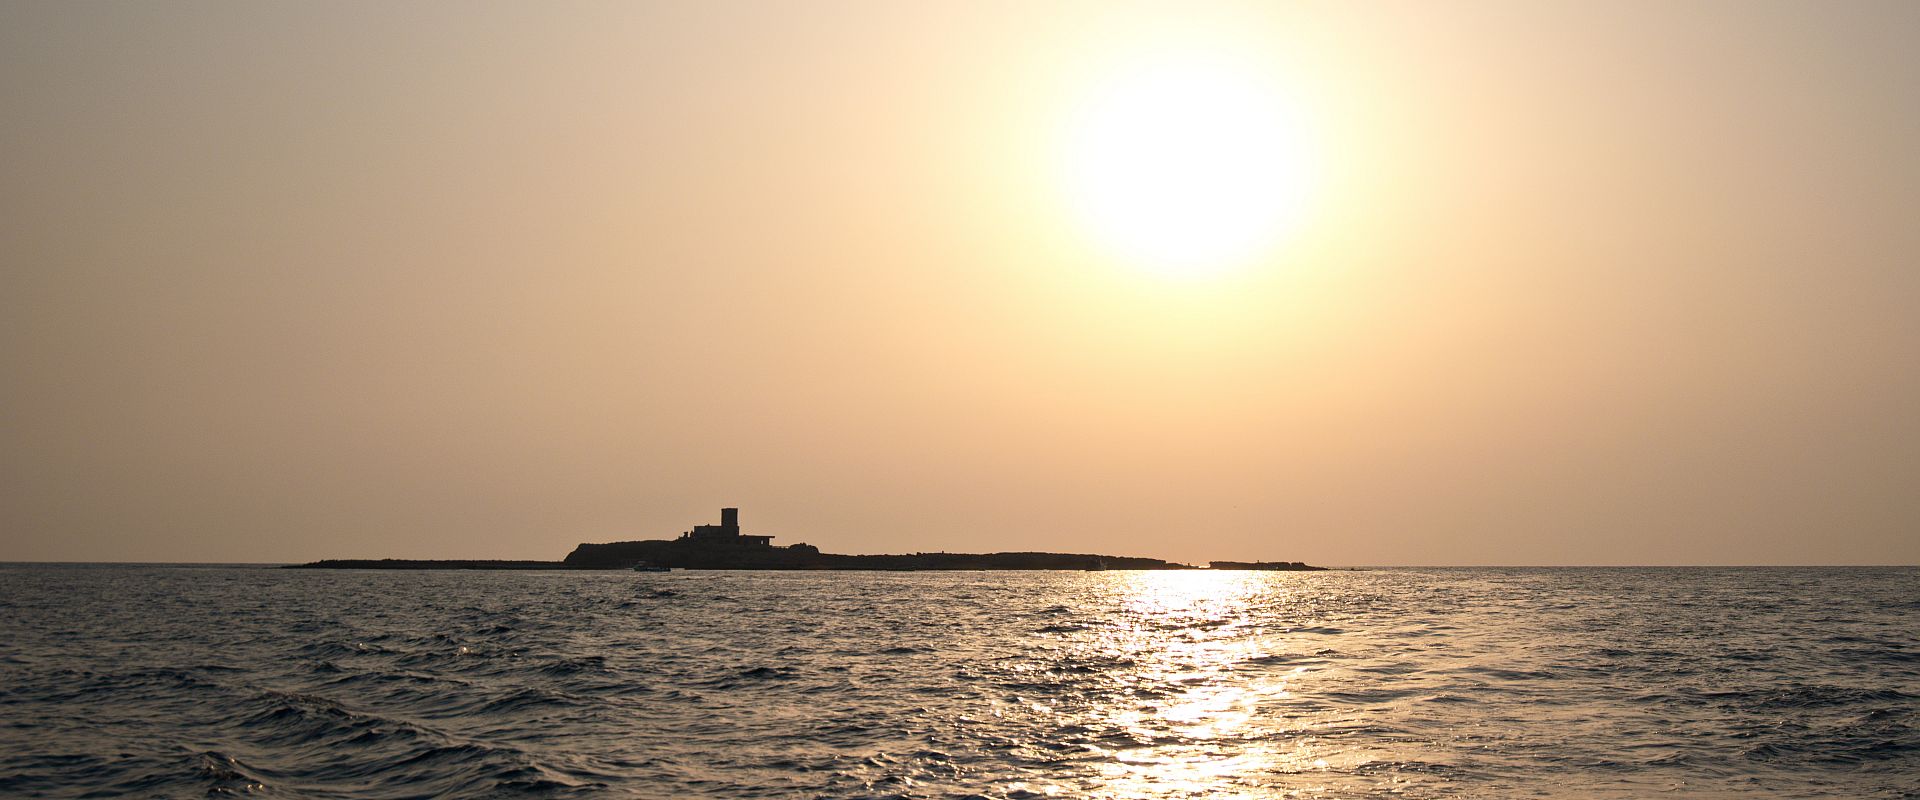 Ramkeen Island Lebanon's lost island. 